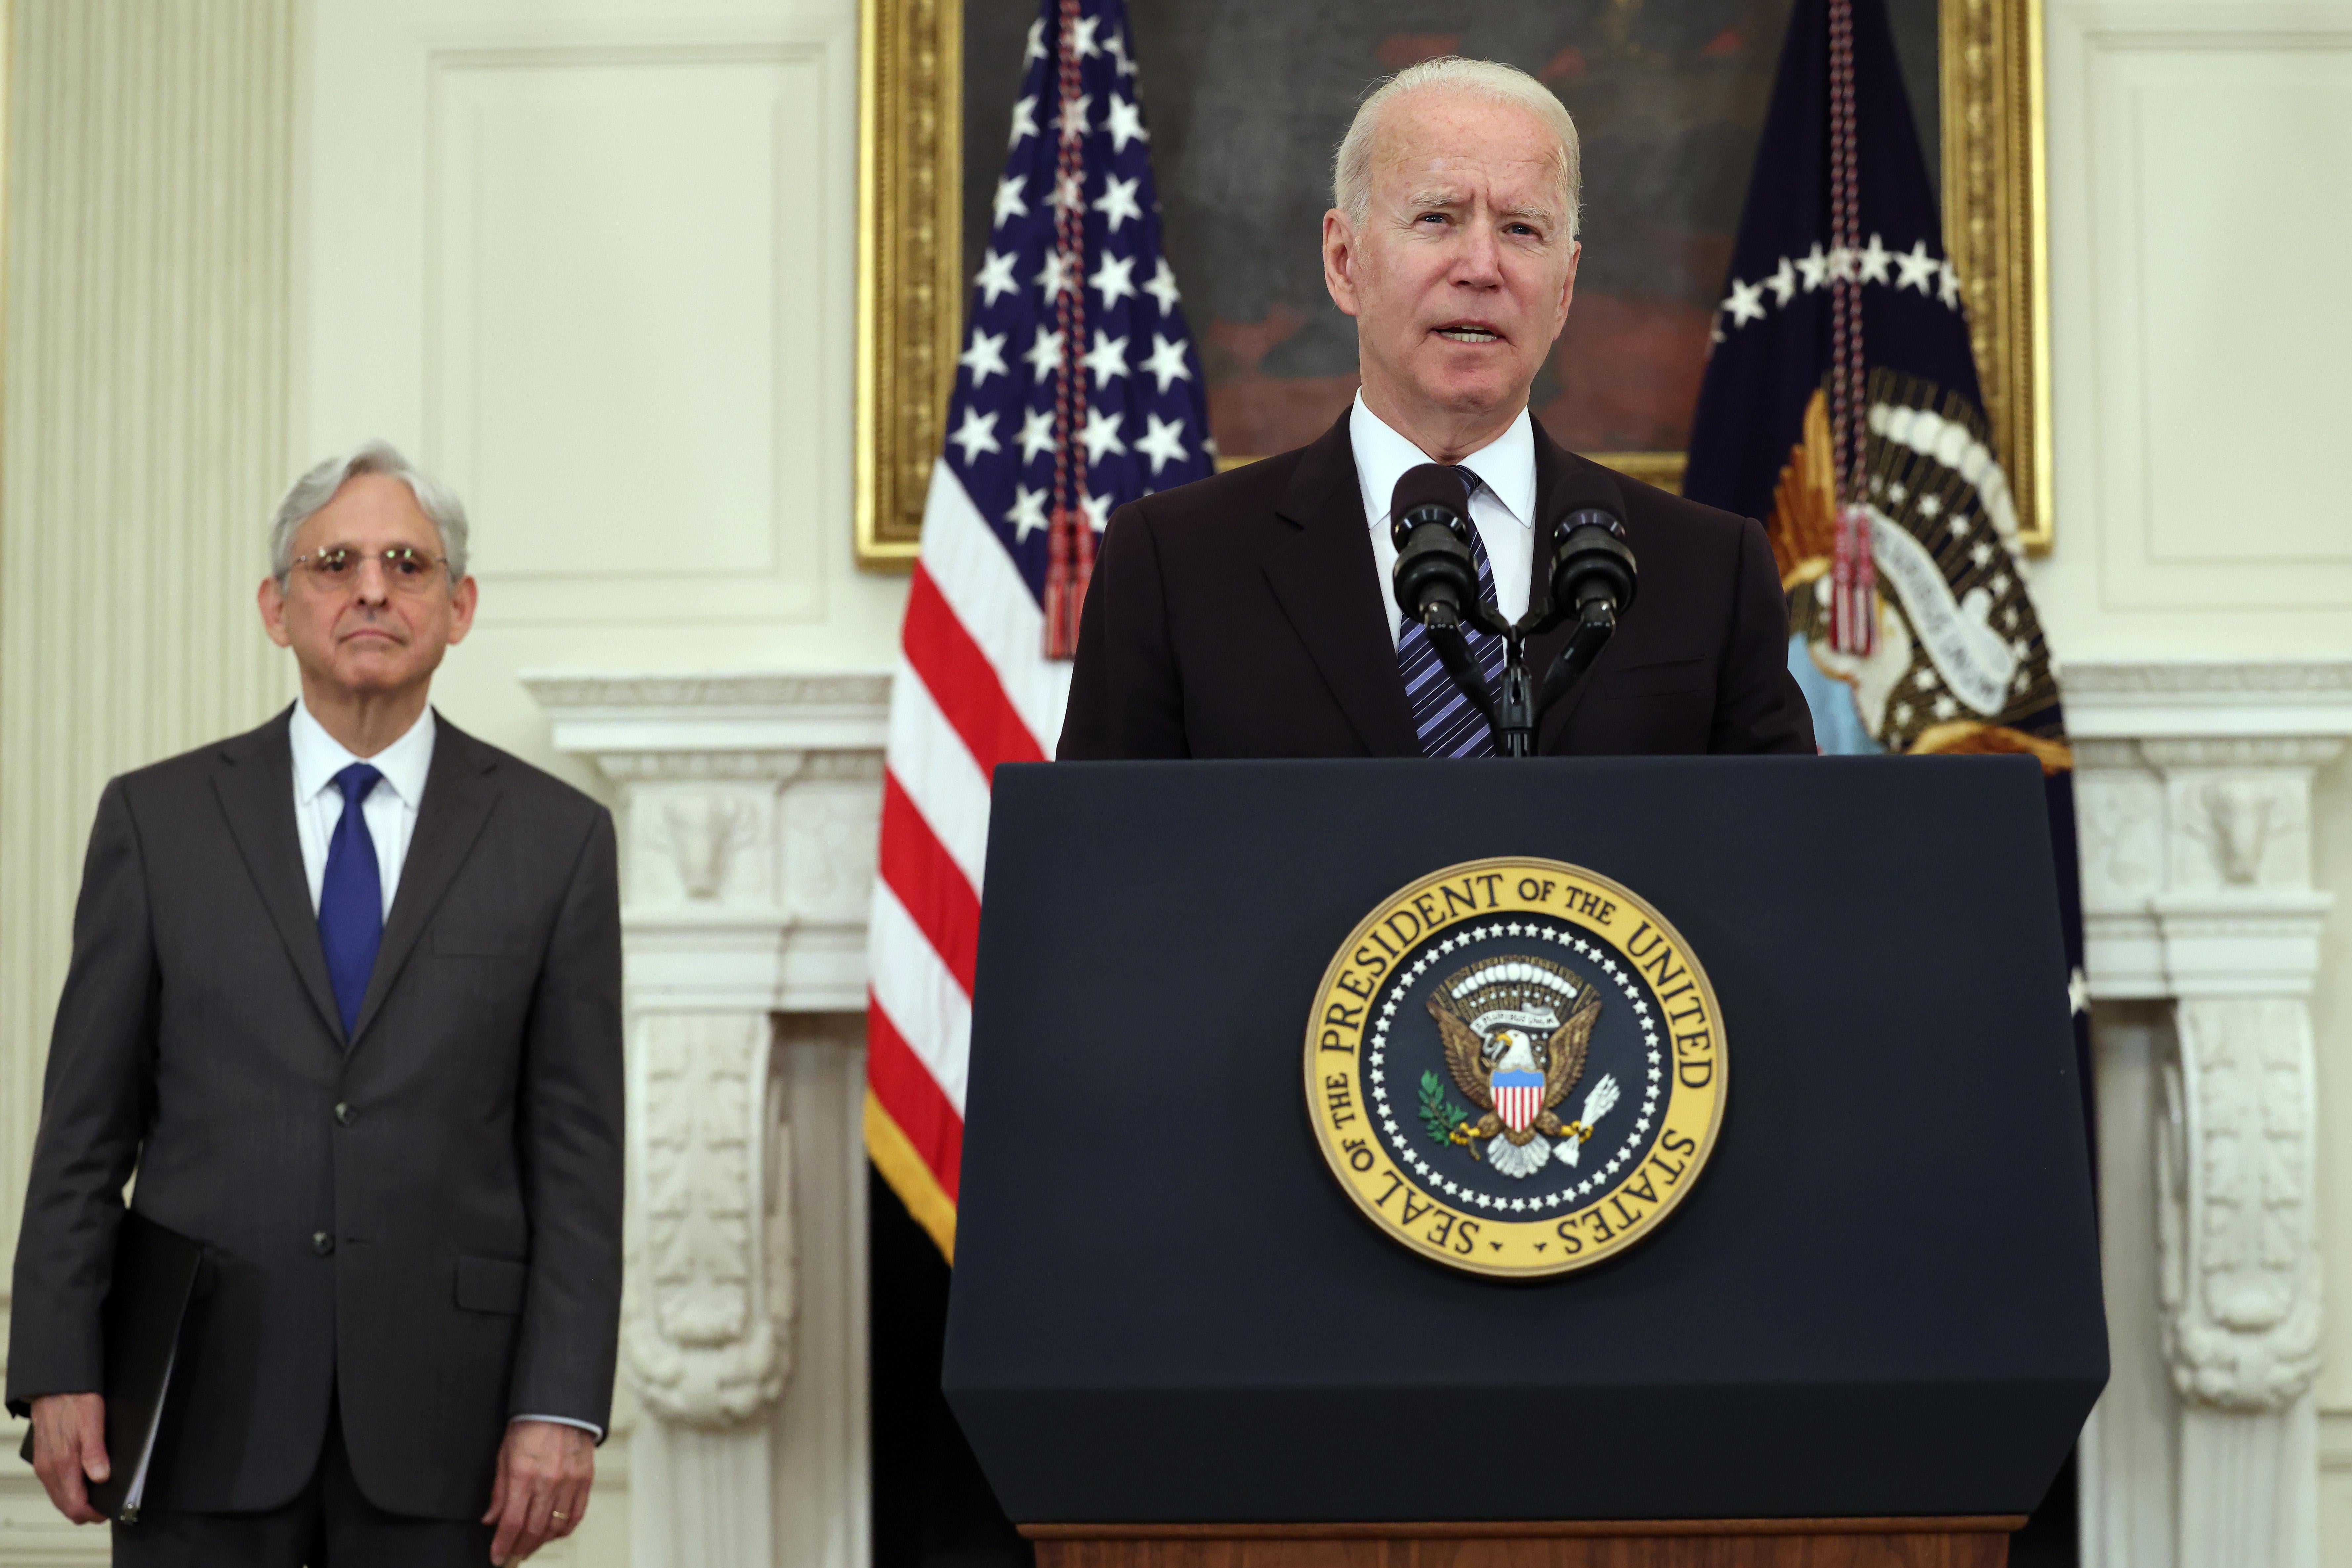 Biden speaks at a podium with Garland standing behind him